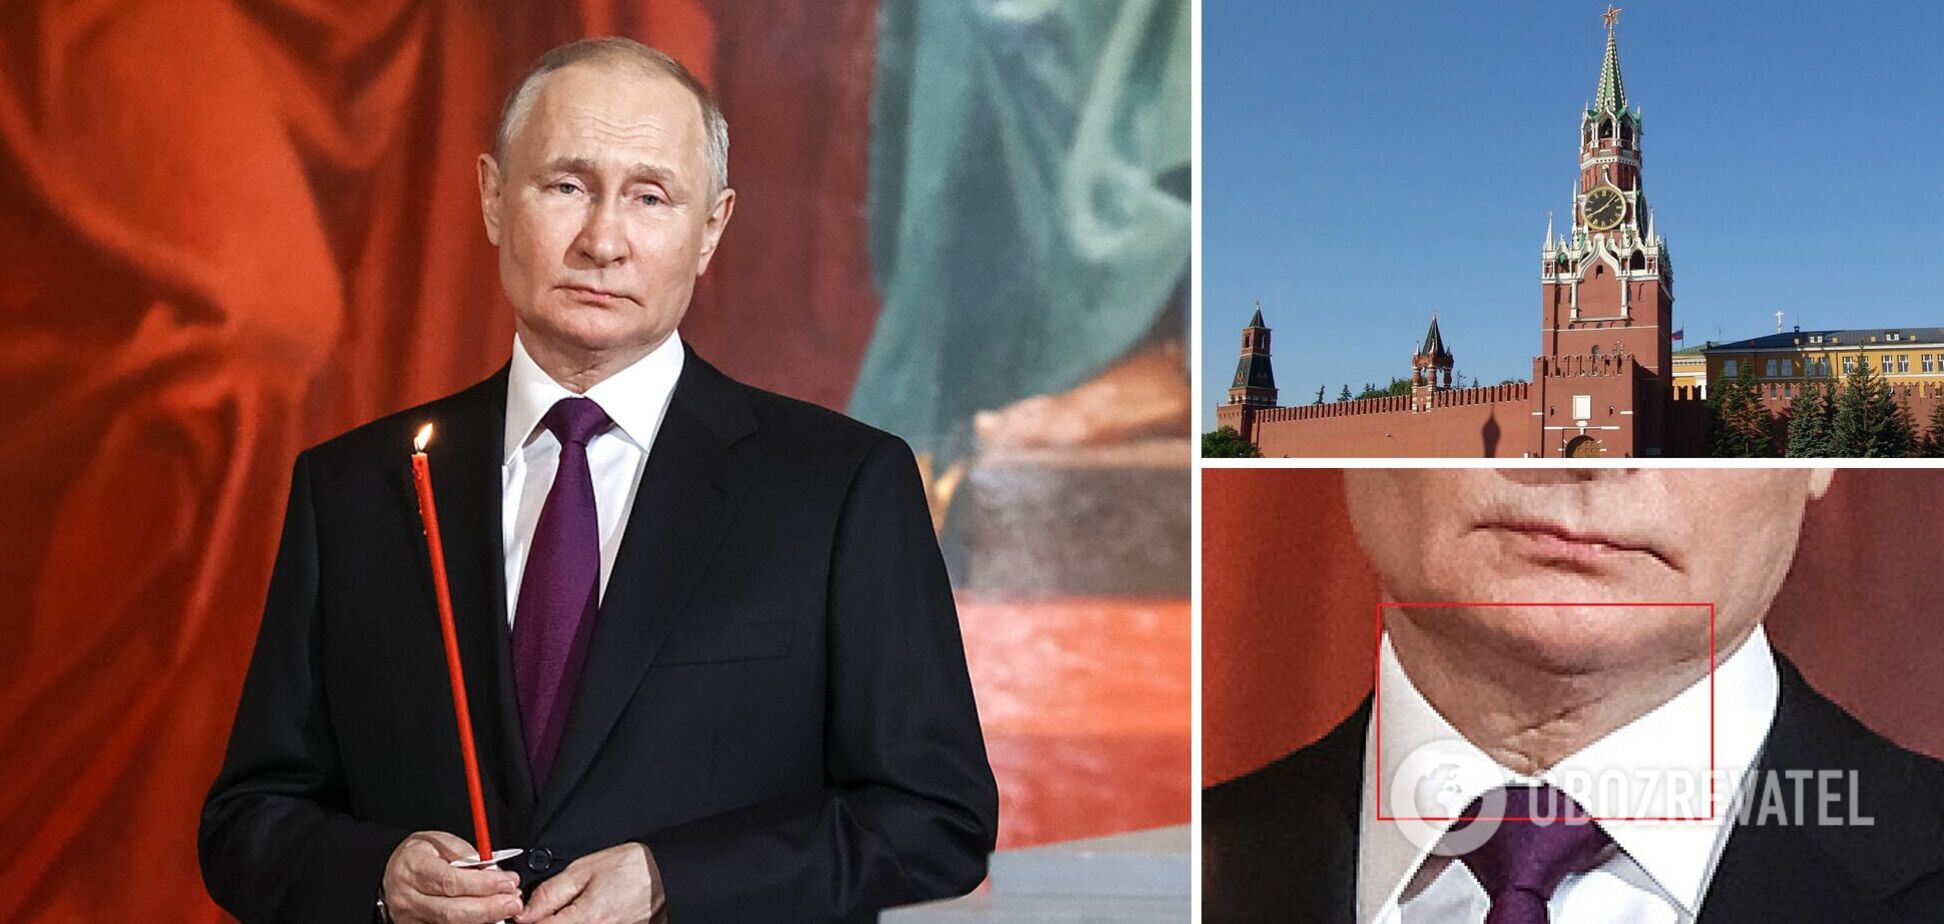 Двойник или след от операции? На фото Путина в церкви на Пасху заметили 'знаковую' деталь